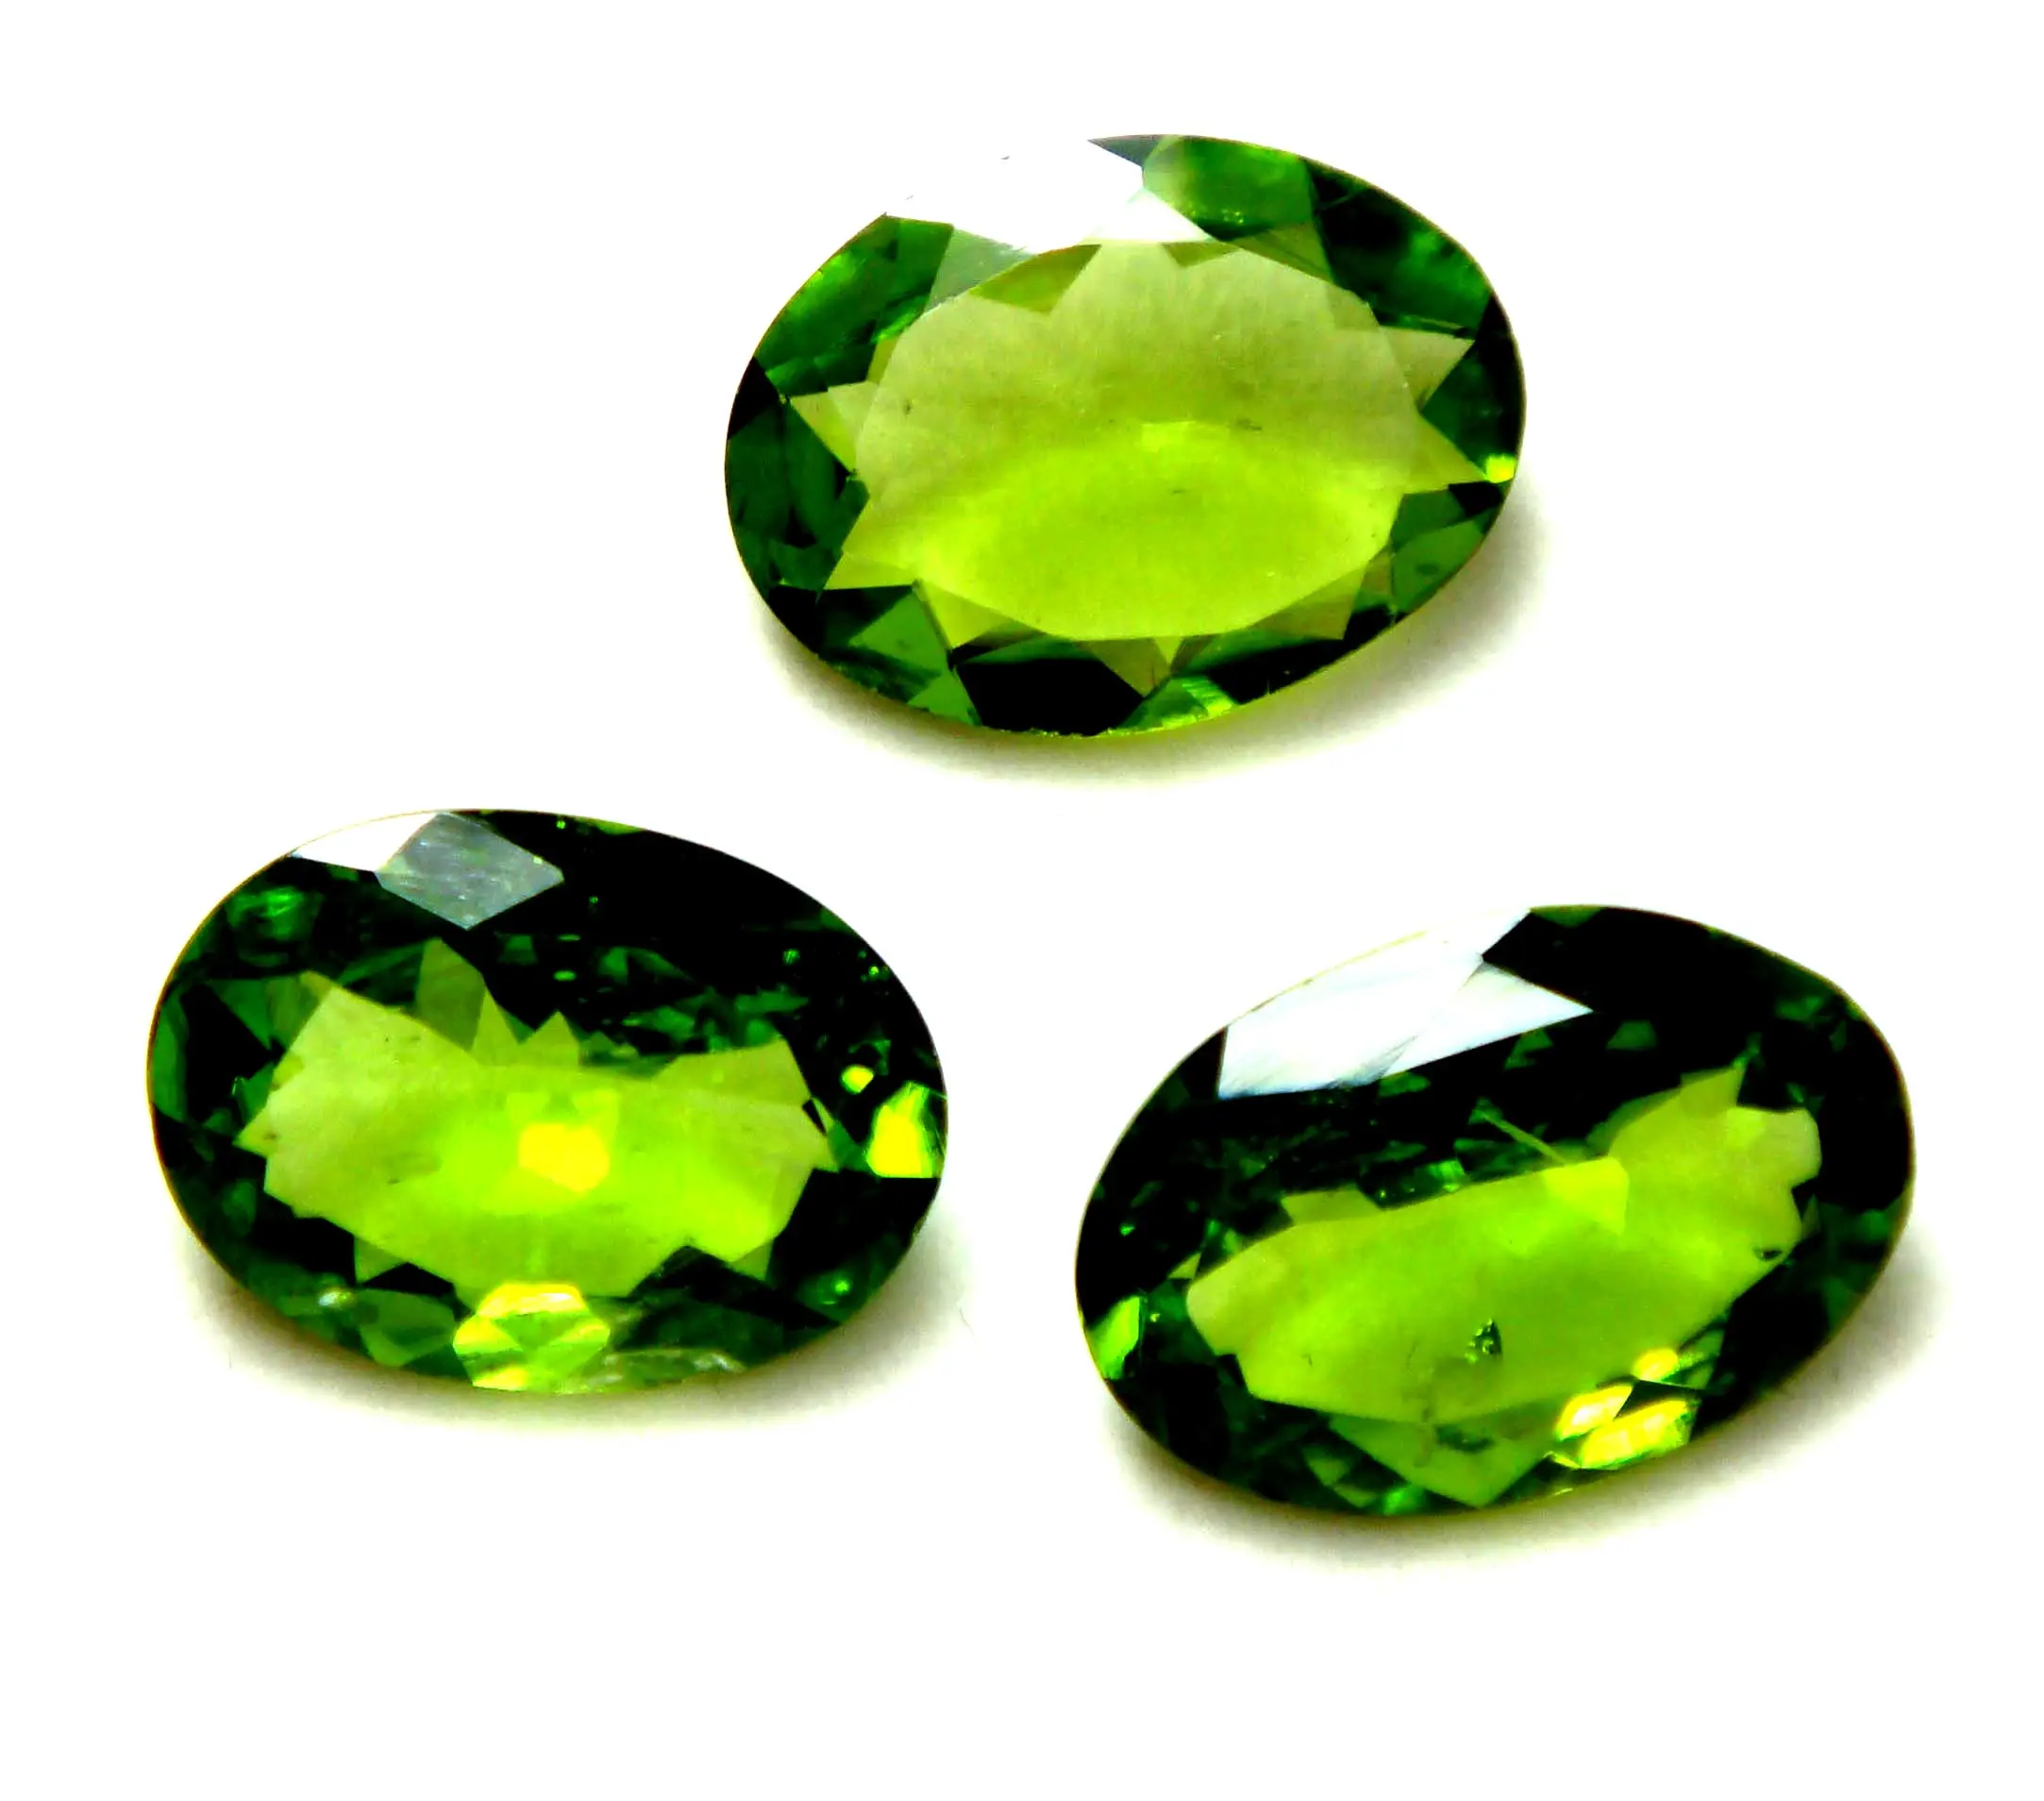 Pedras preciosas soltas naturais artesanais de alta qualidade, cor verde peridoto, corte facetado em formato oval, joias com qualidade incrível